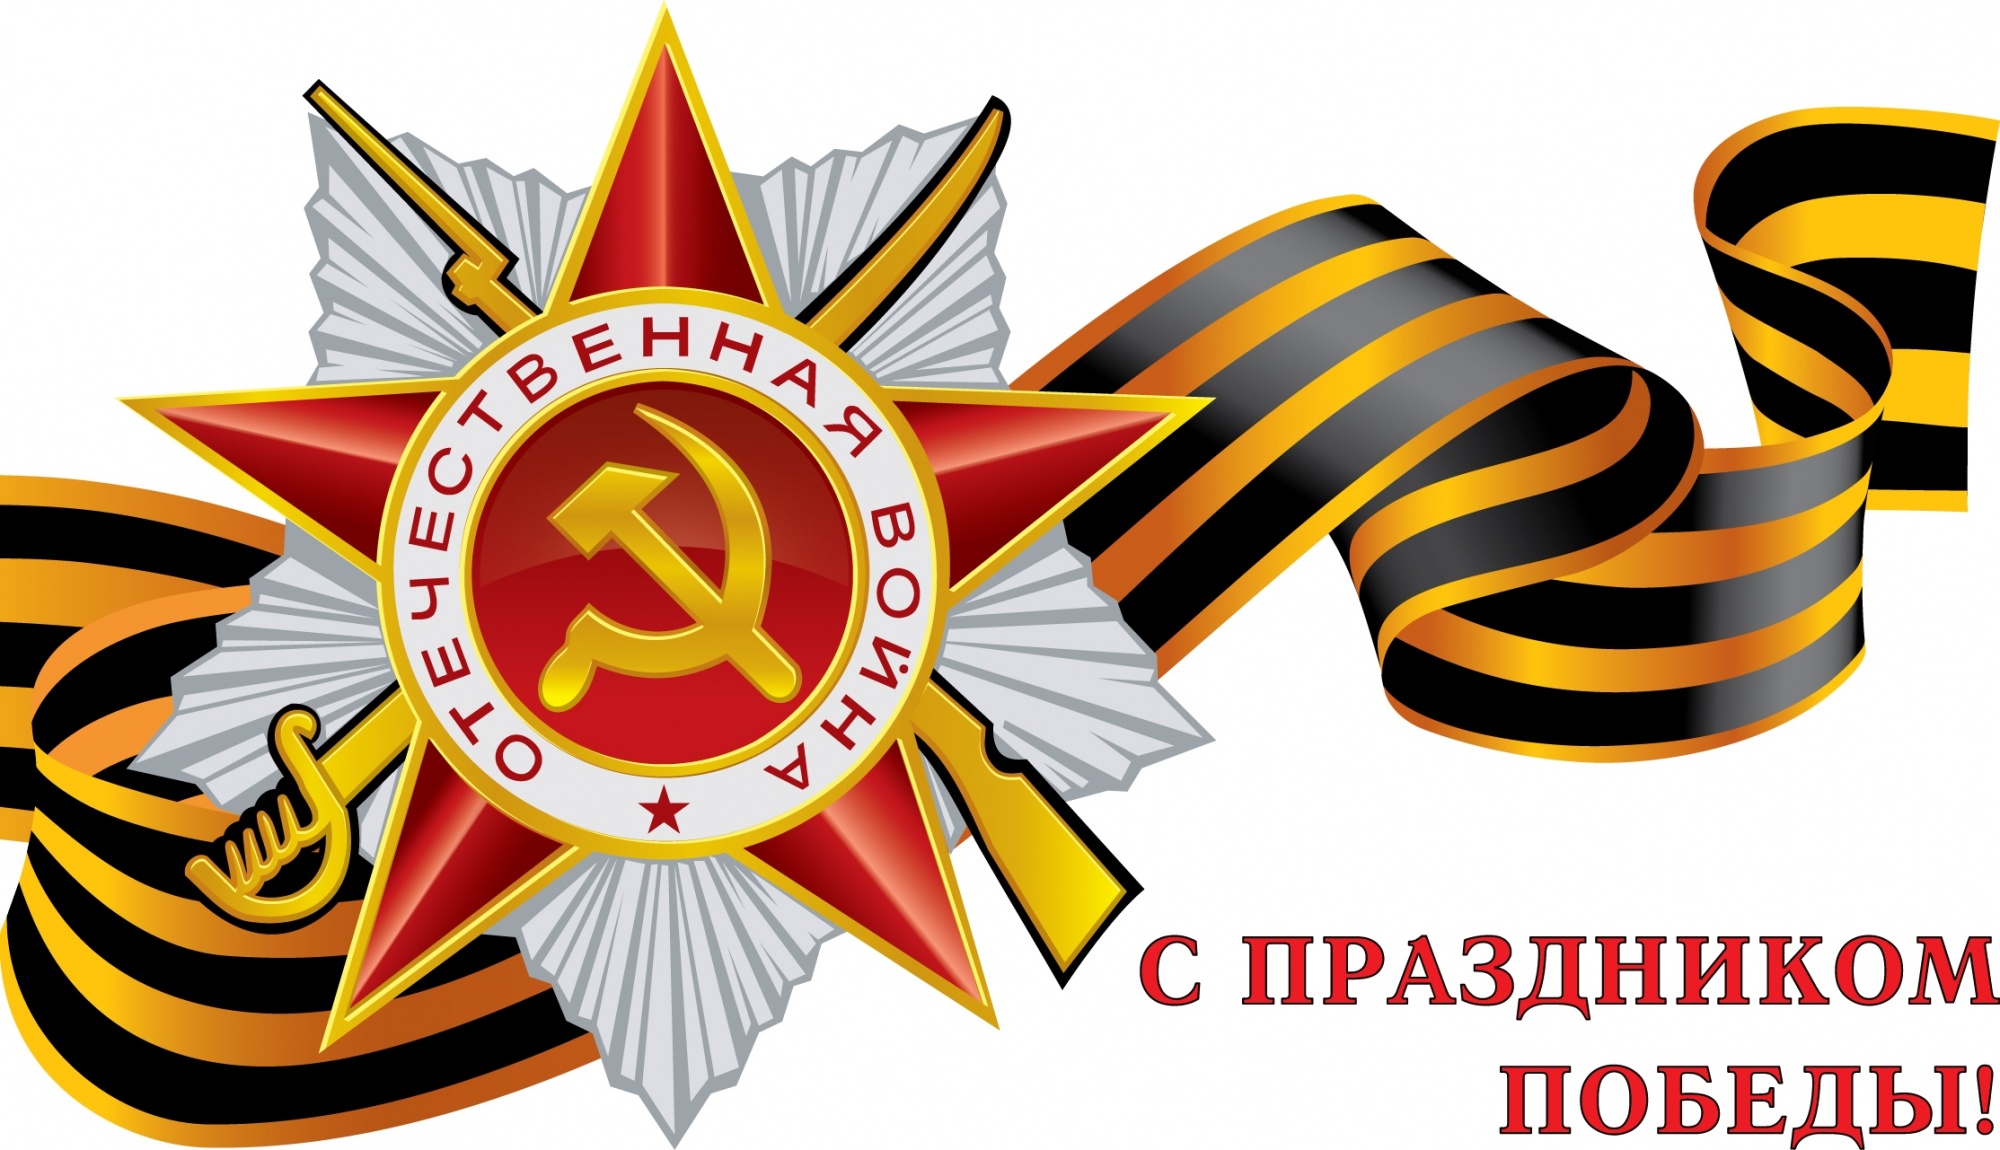 Дорогие ленинградцы-петербуржцы! Уважаемые ветераны Великой Отечественной войны!